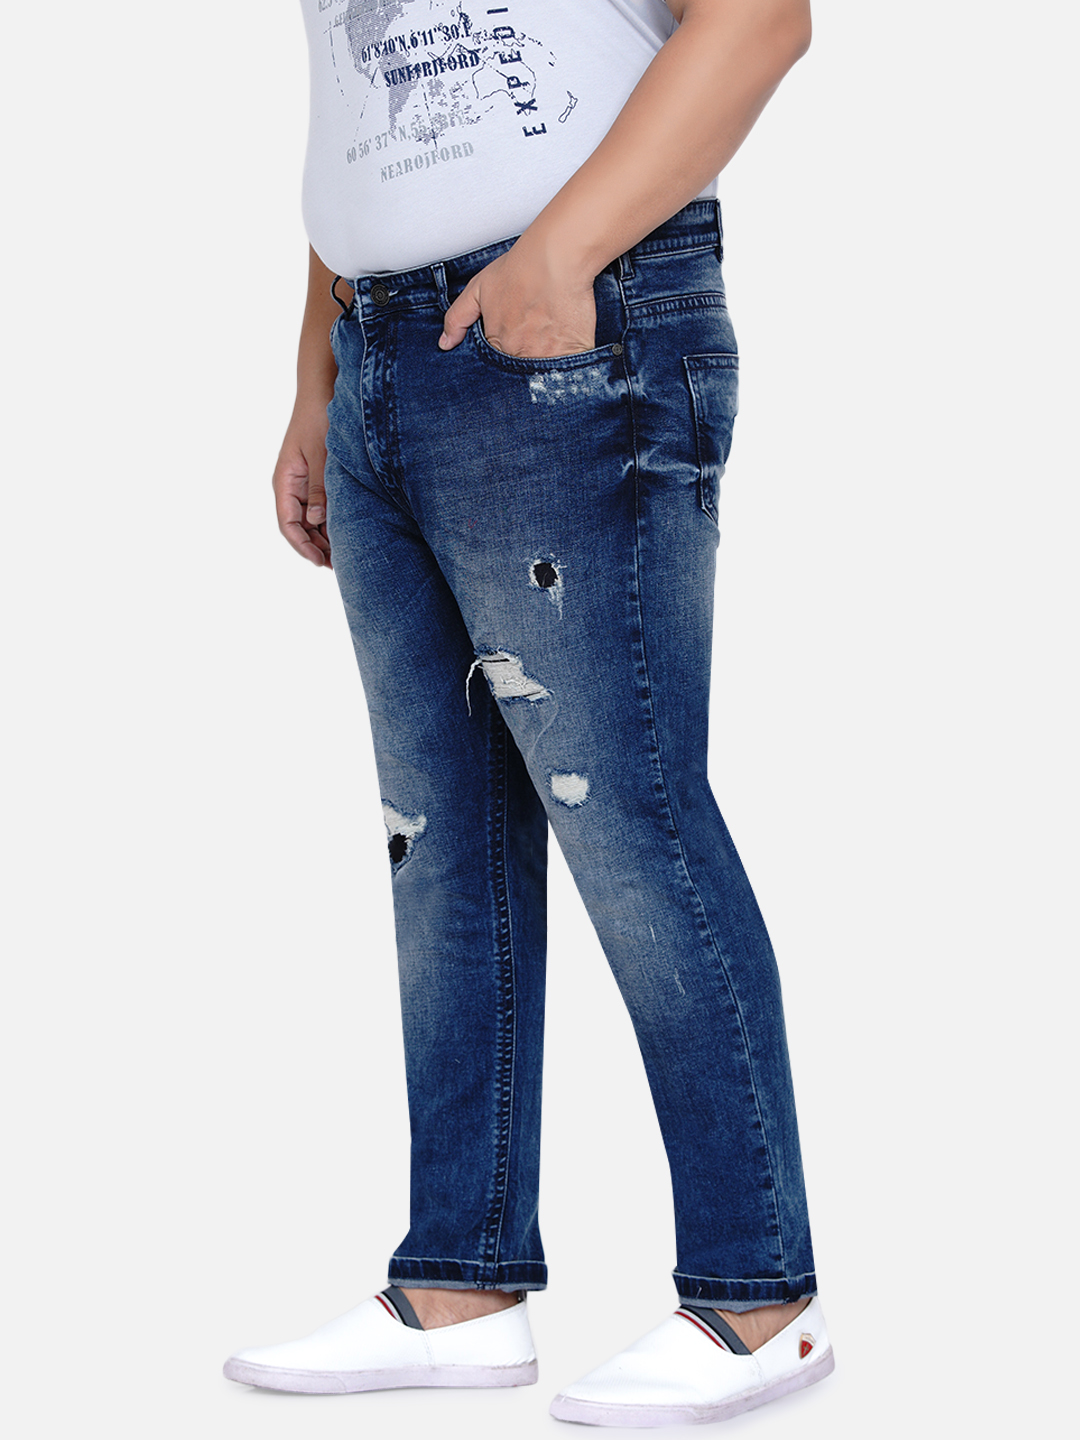 bottomwear/jeans/JPJ12185/jpj12185-5.jpg